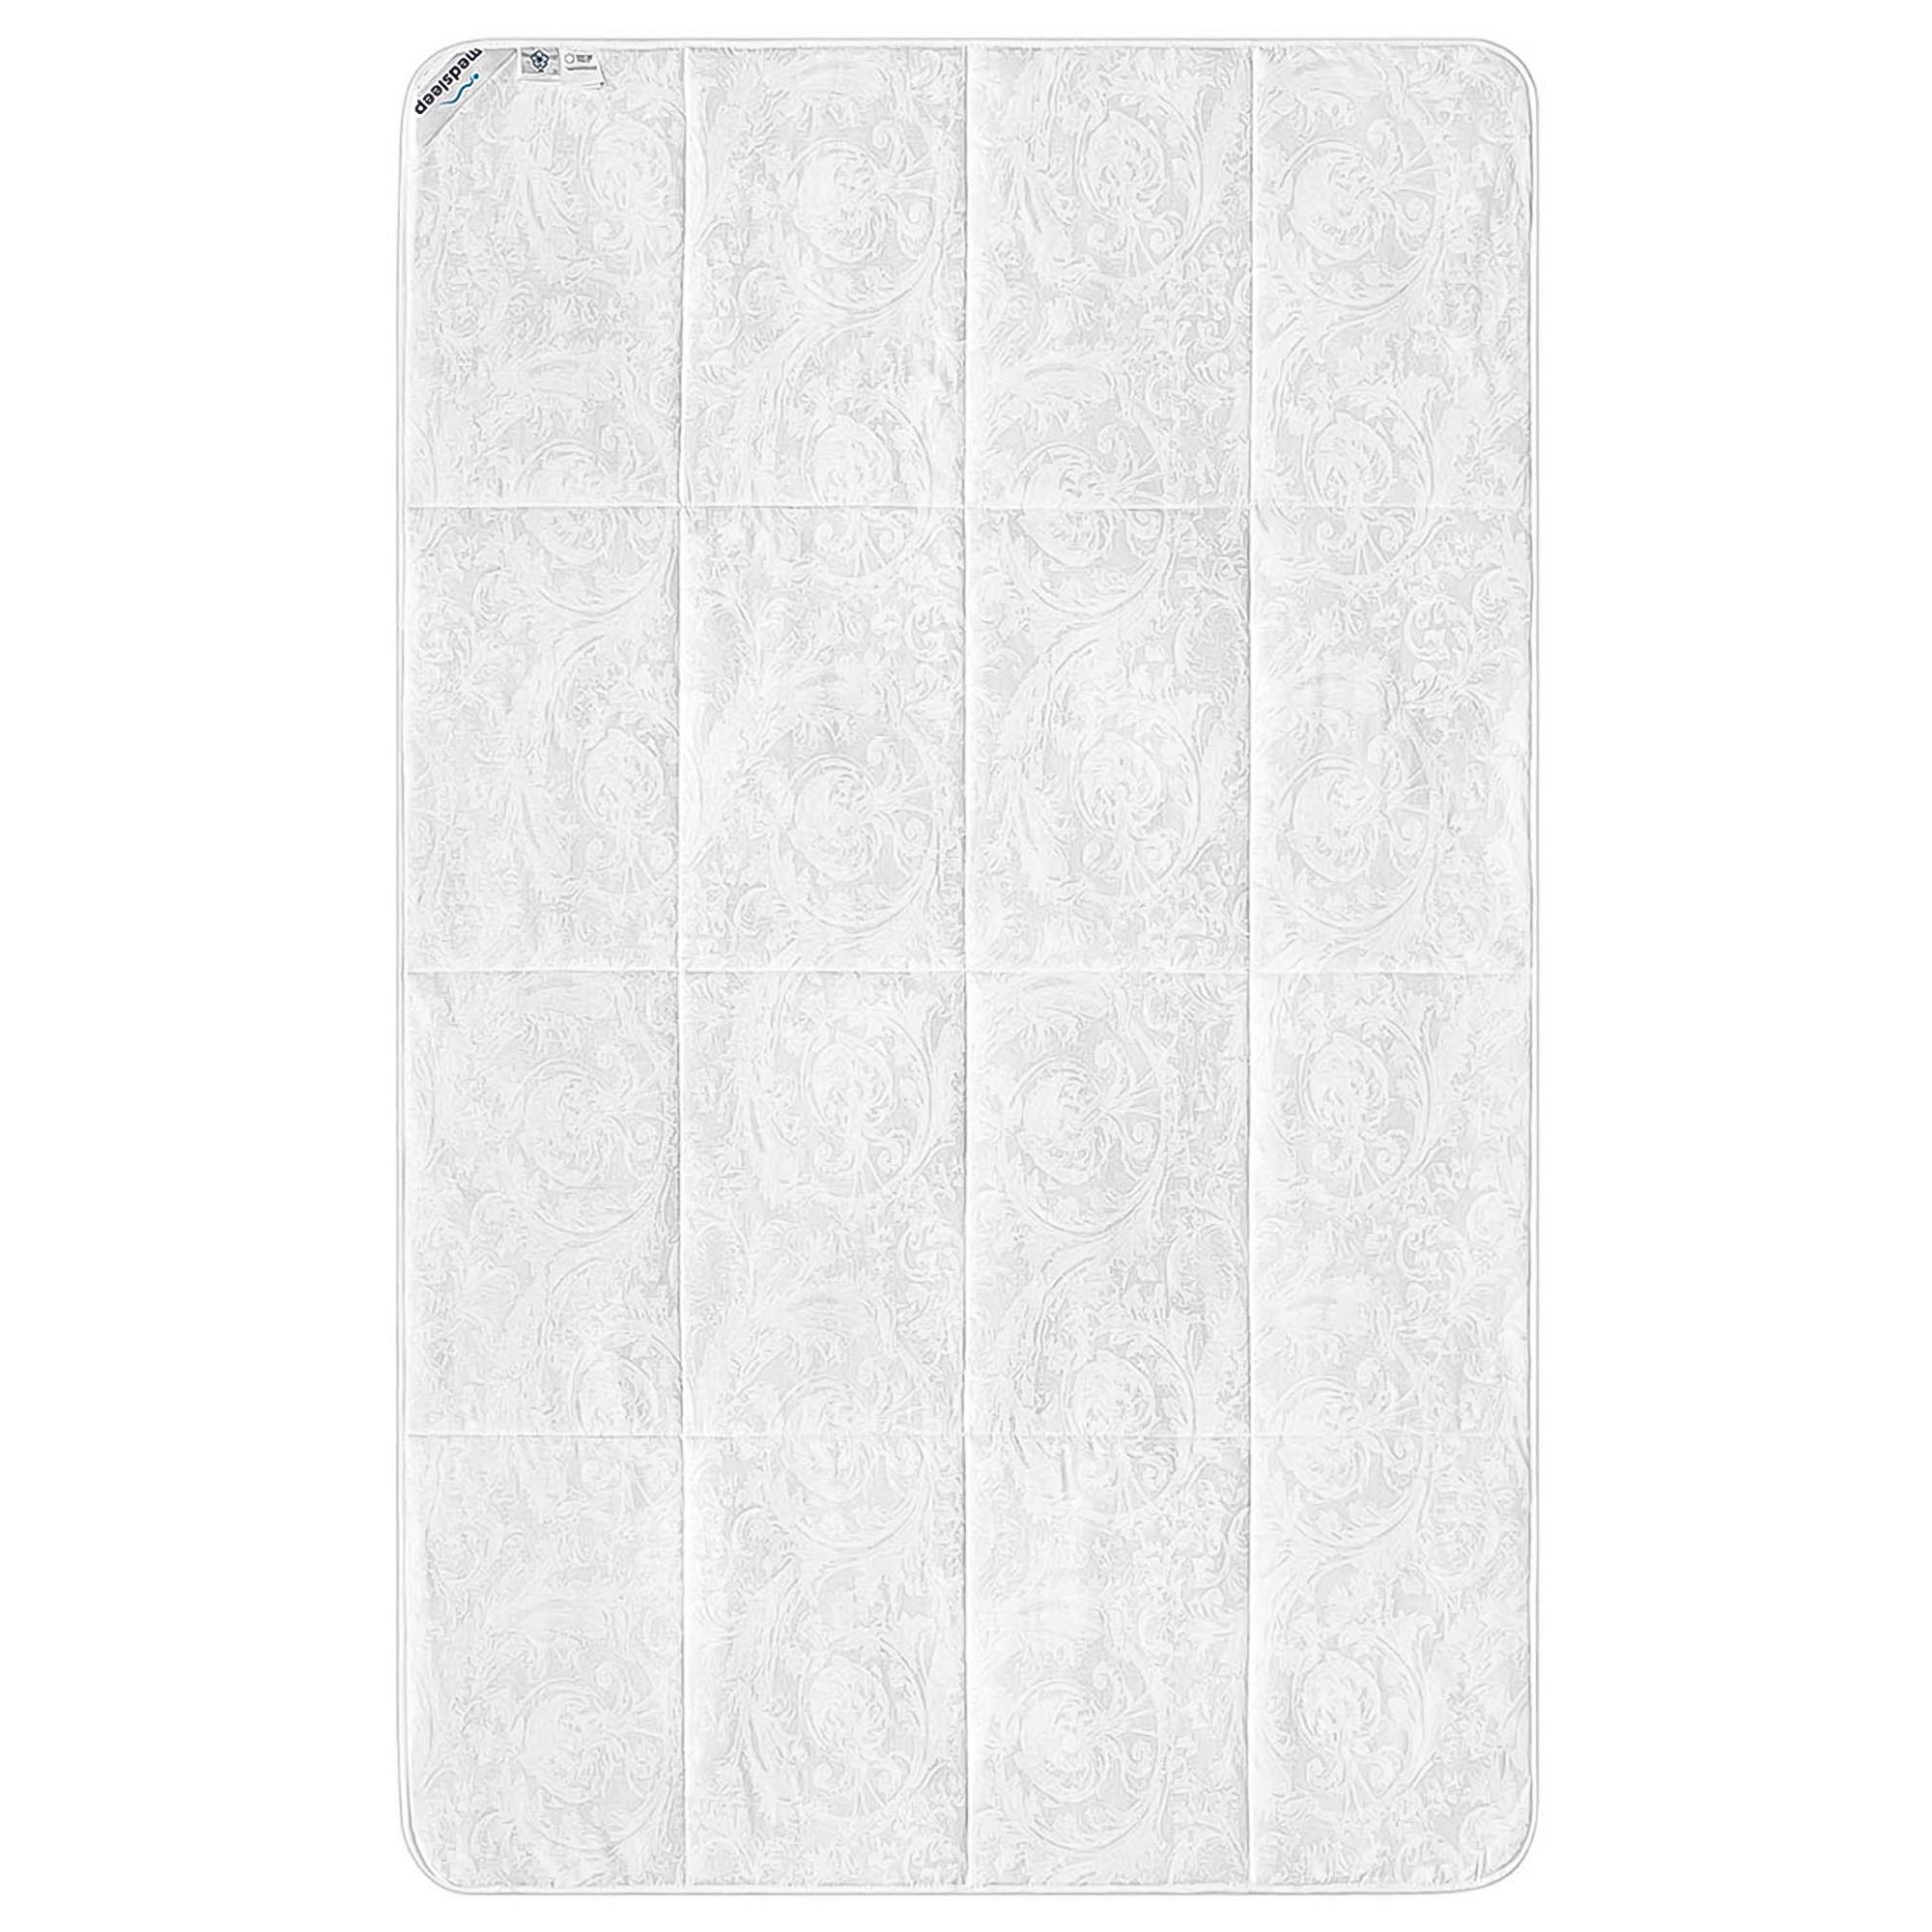 Одеяло Medsleep Skylor белое 140х200 см, цвет белый - фото 2